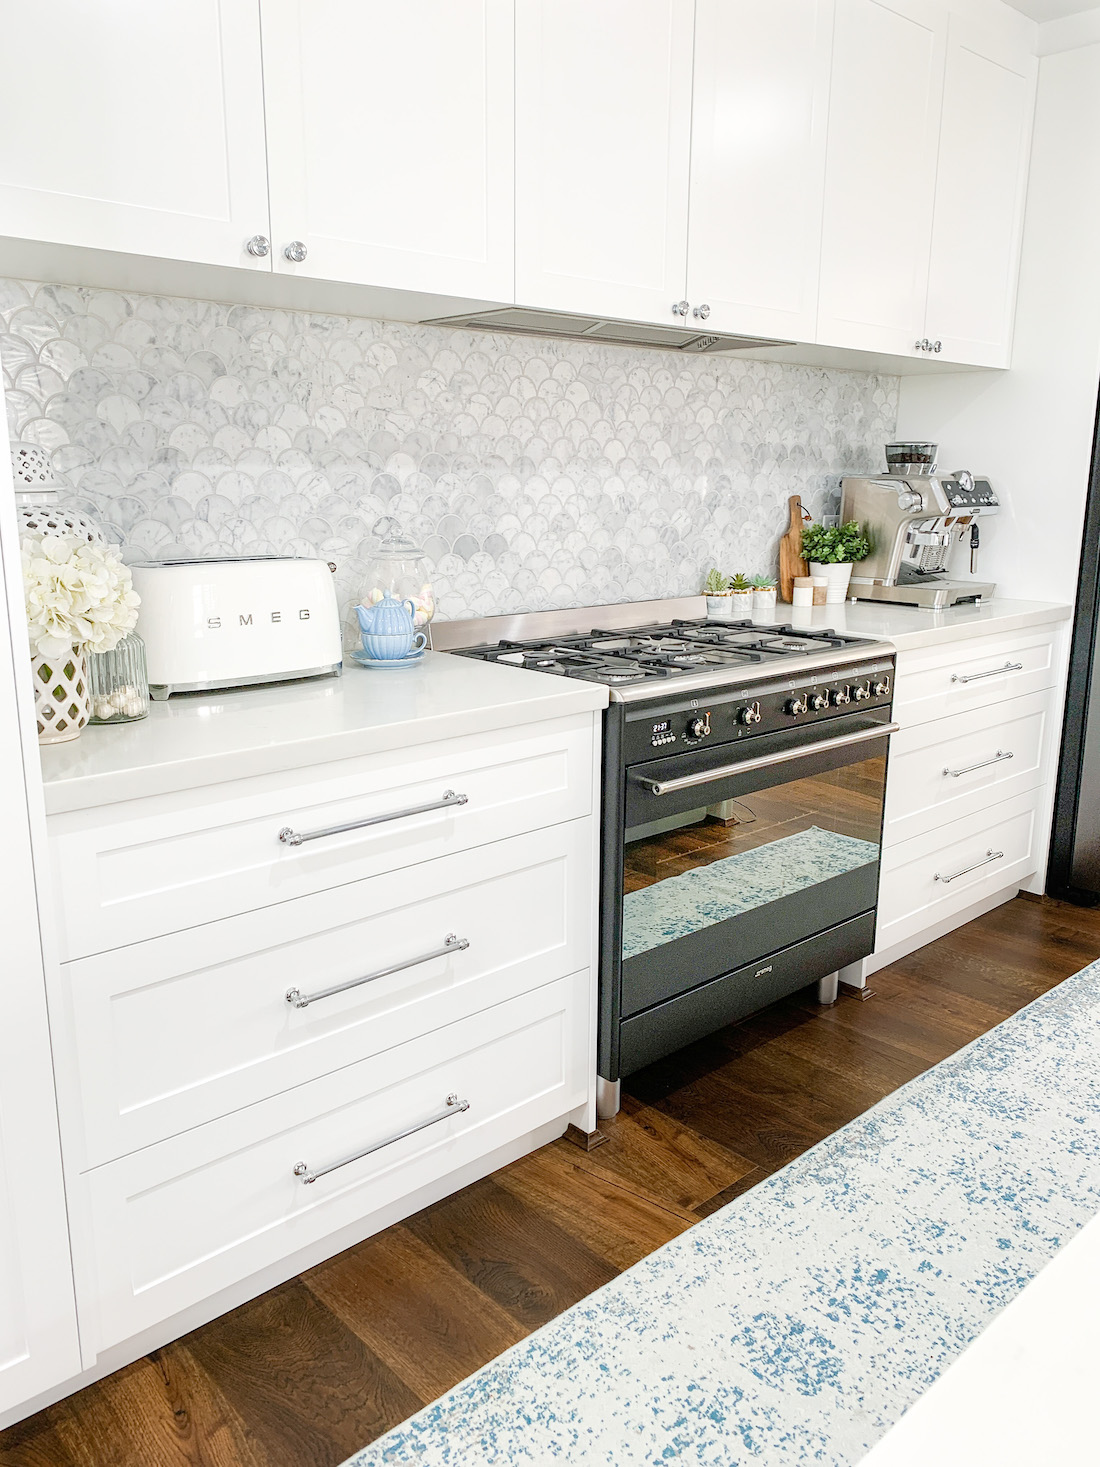 Hamptons inspired kitchen makeover _ white kitchen